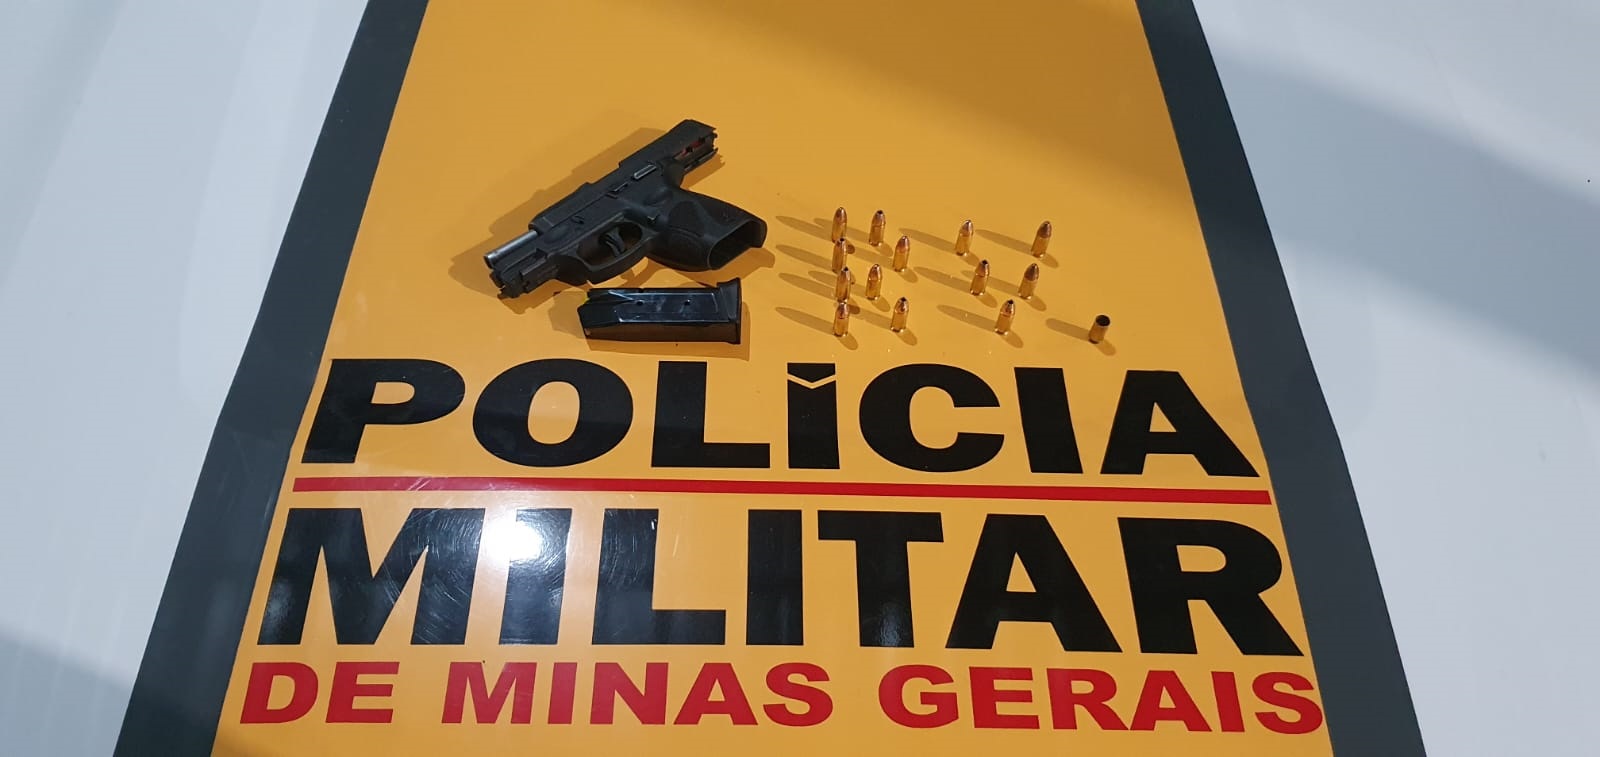 PMRv apreende arma, munições e carro durante operação, em Verdelândia